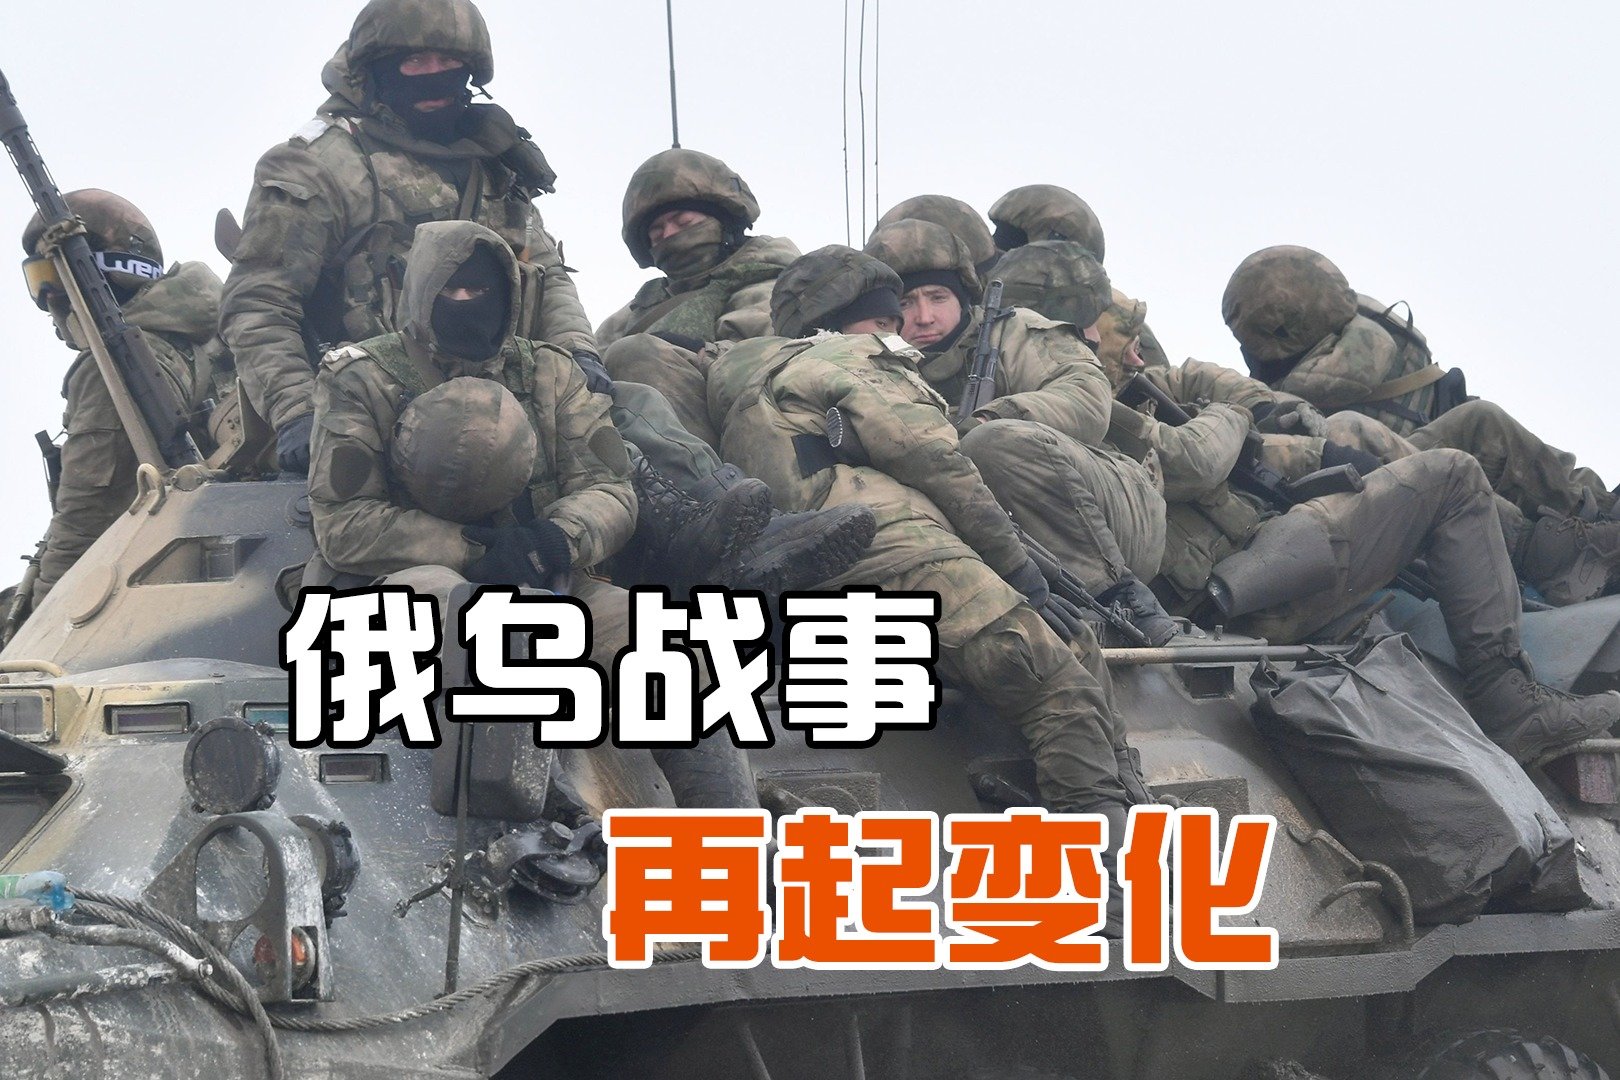 中国参加俄国军演 解放军战车已抵俄罗斯 — 普通话主页